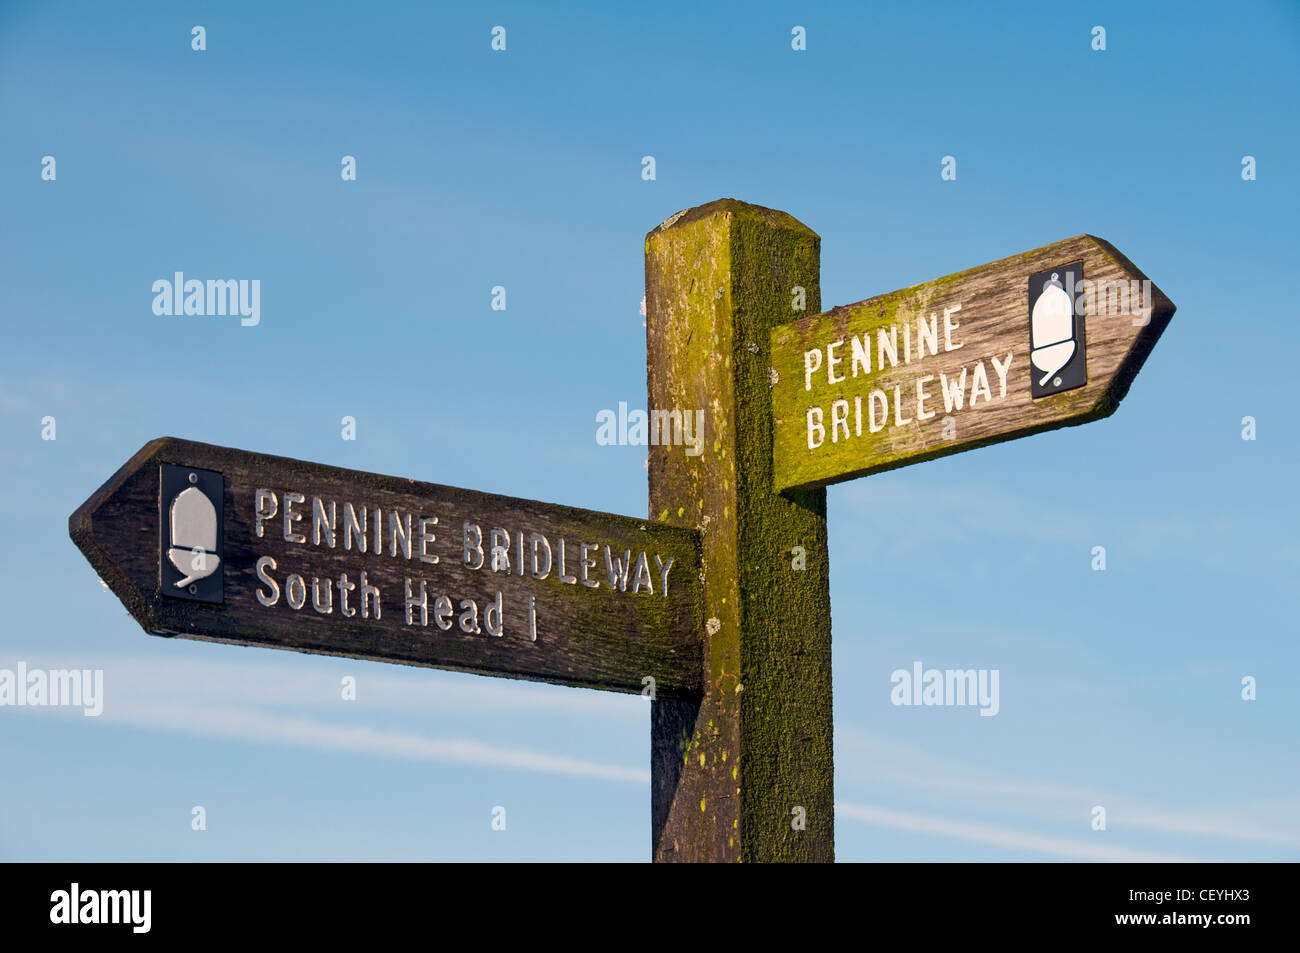 Pennine Bridleway signpost rivolti a sud di testa. Vicino a testa Chinley, Peak District, Derbyshire, Inghilterra, Regno Unito. Foto Stock